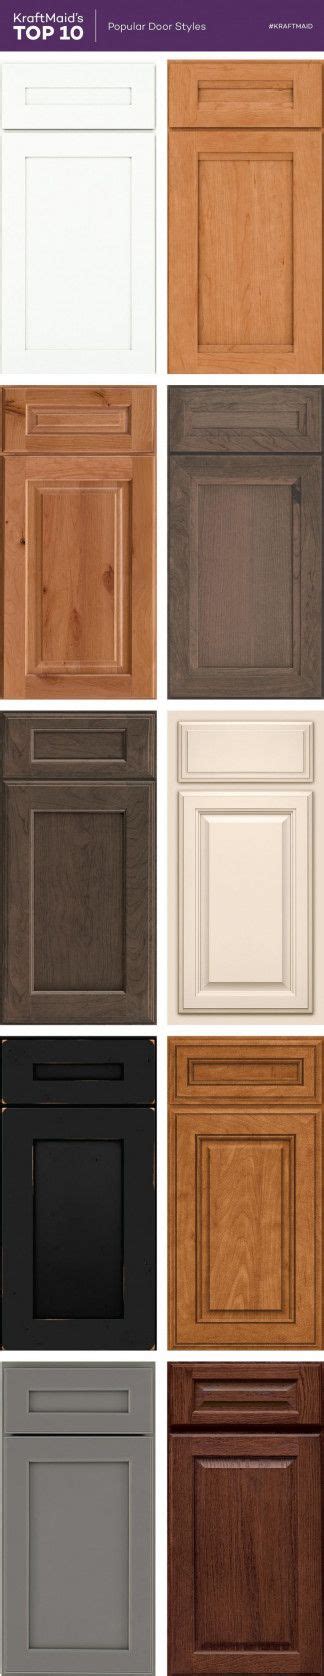 50 Kraftmaid Kitchen Cabinet Doors Kitchen Shelf Display Ideas Check